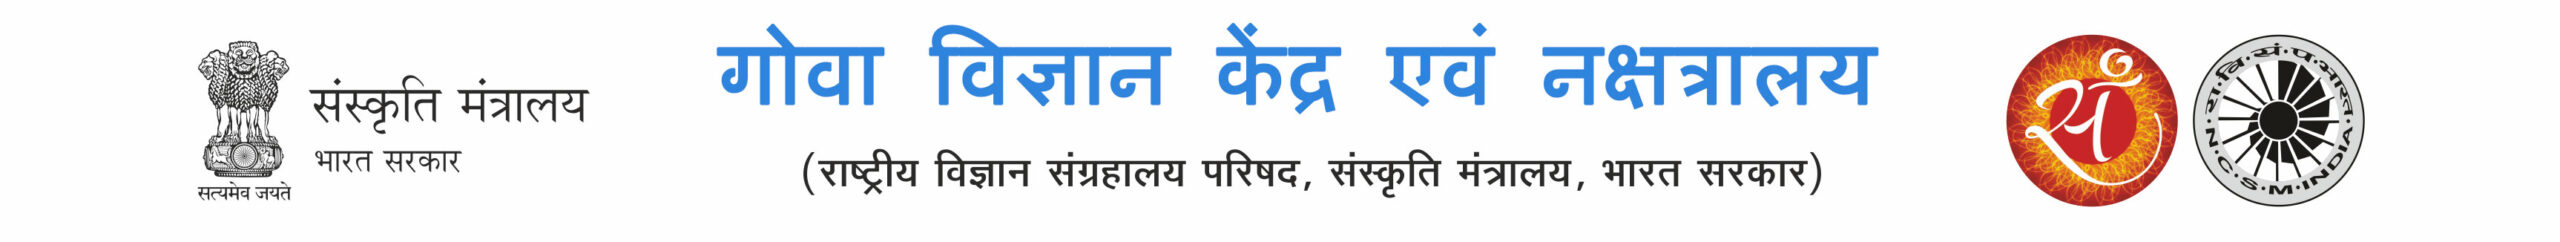 logo-hindi